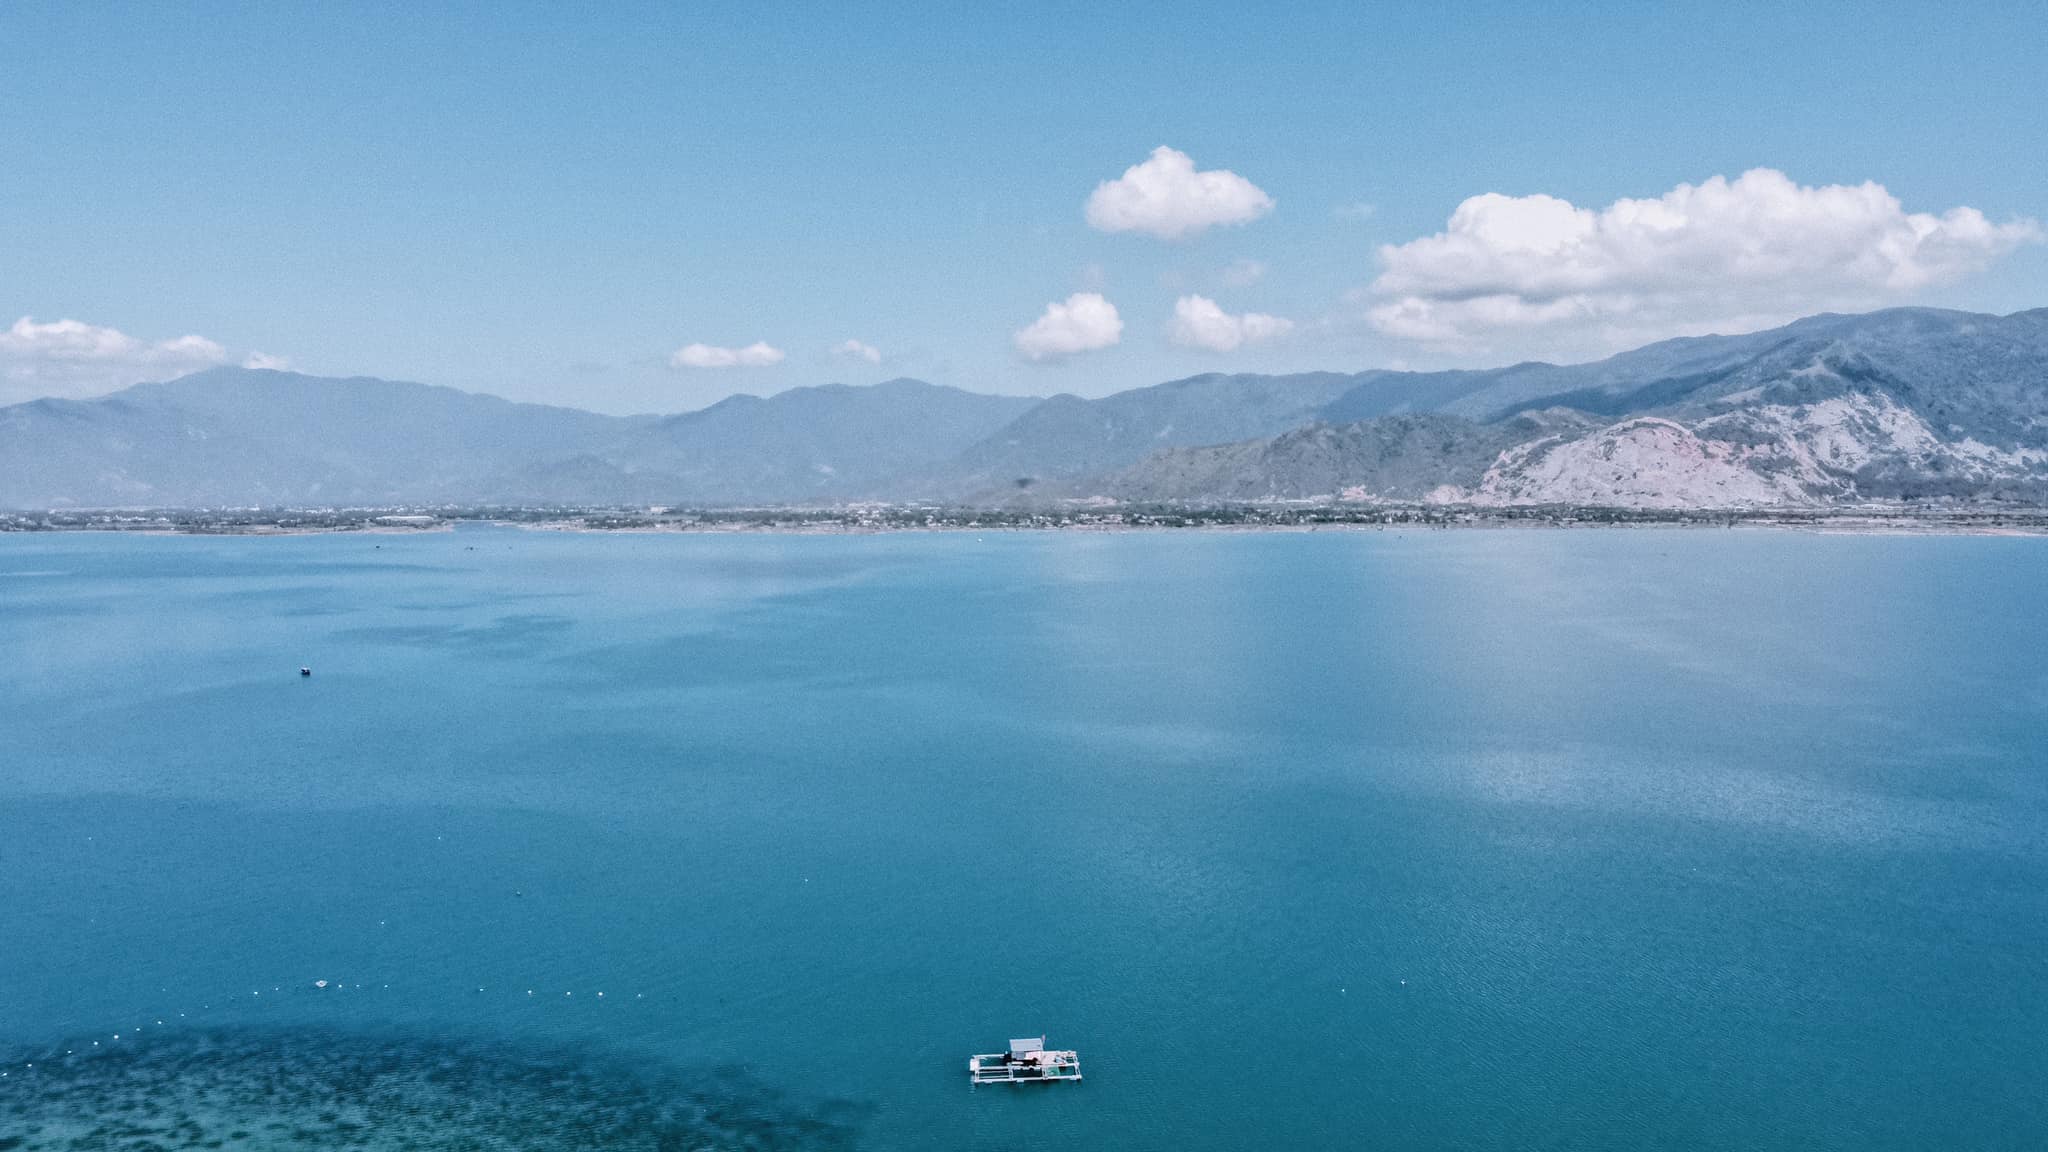 Khám phá vẻ đẹp độc đáo của đảo Điệp Sơn - Nha Trang qua bộ ảnh của Cường Quốc Phạm 4